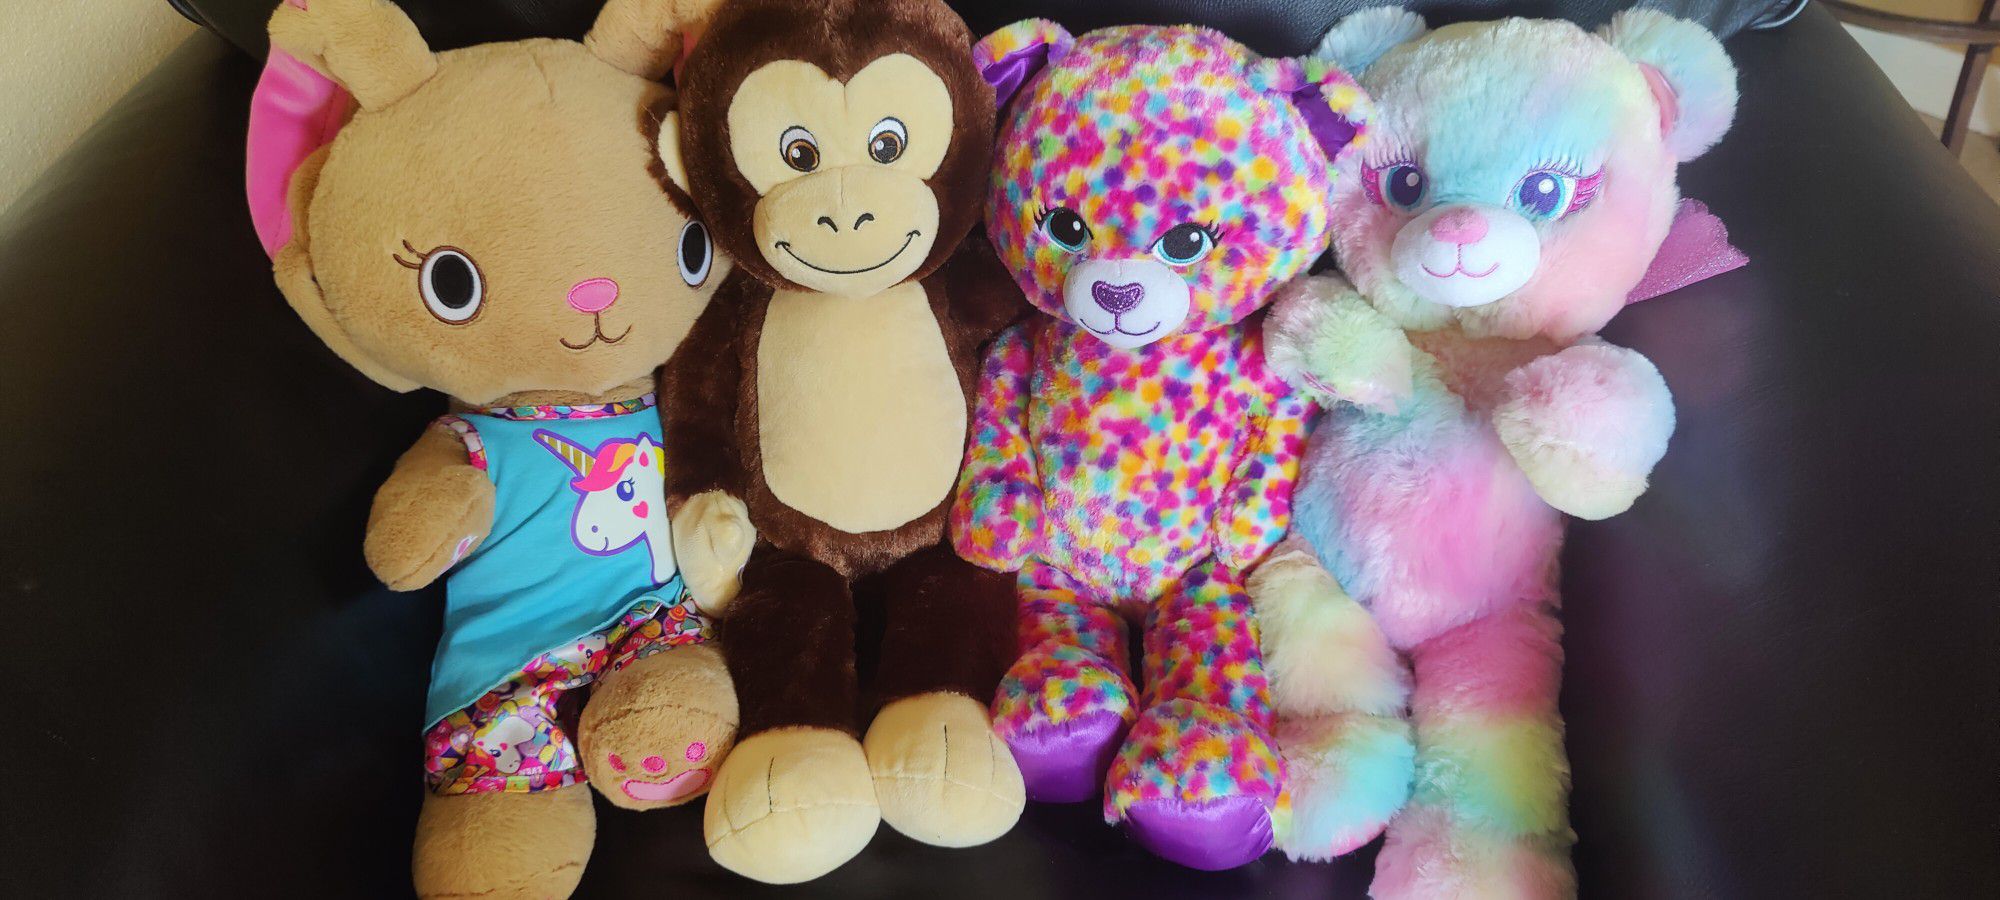 Build-A-Bear Stuffed Animal Toys